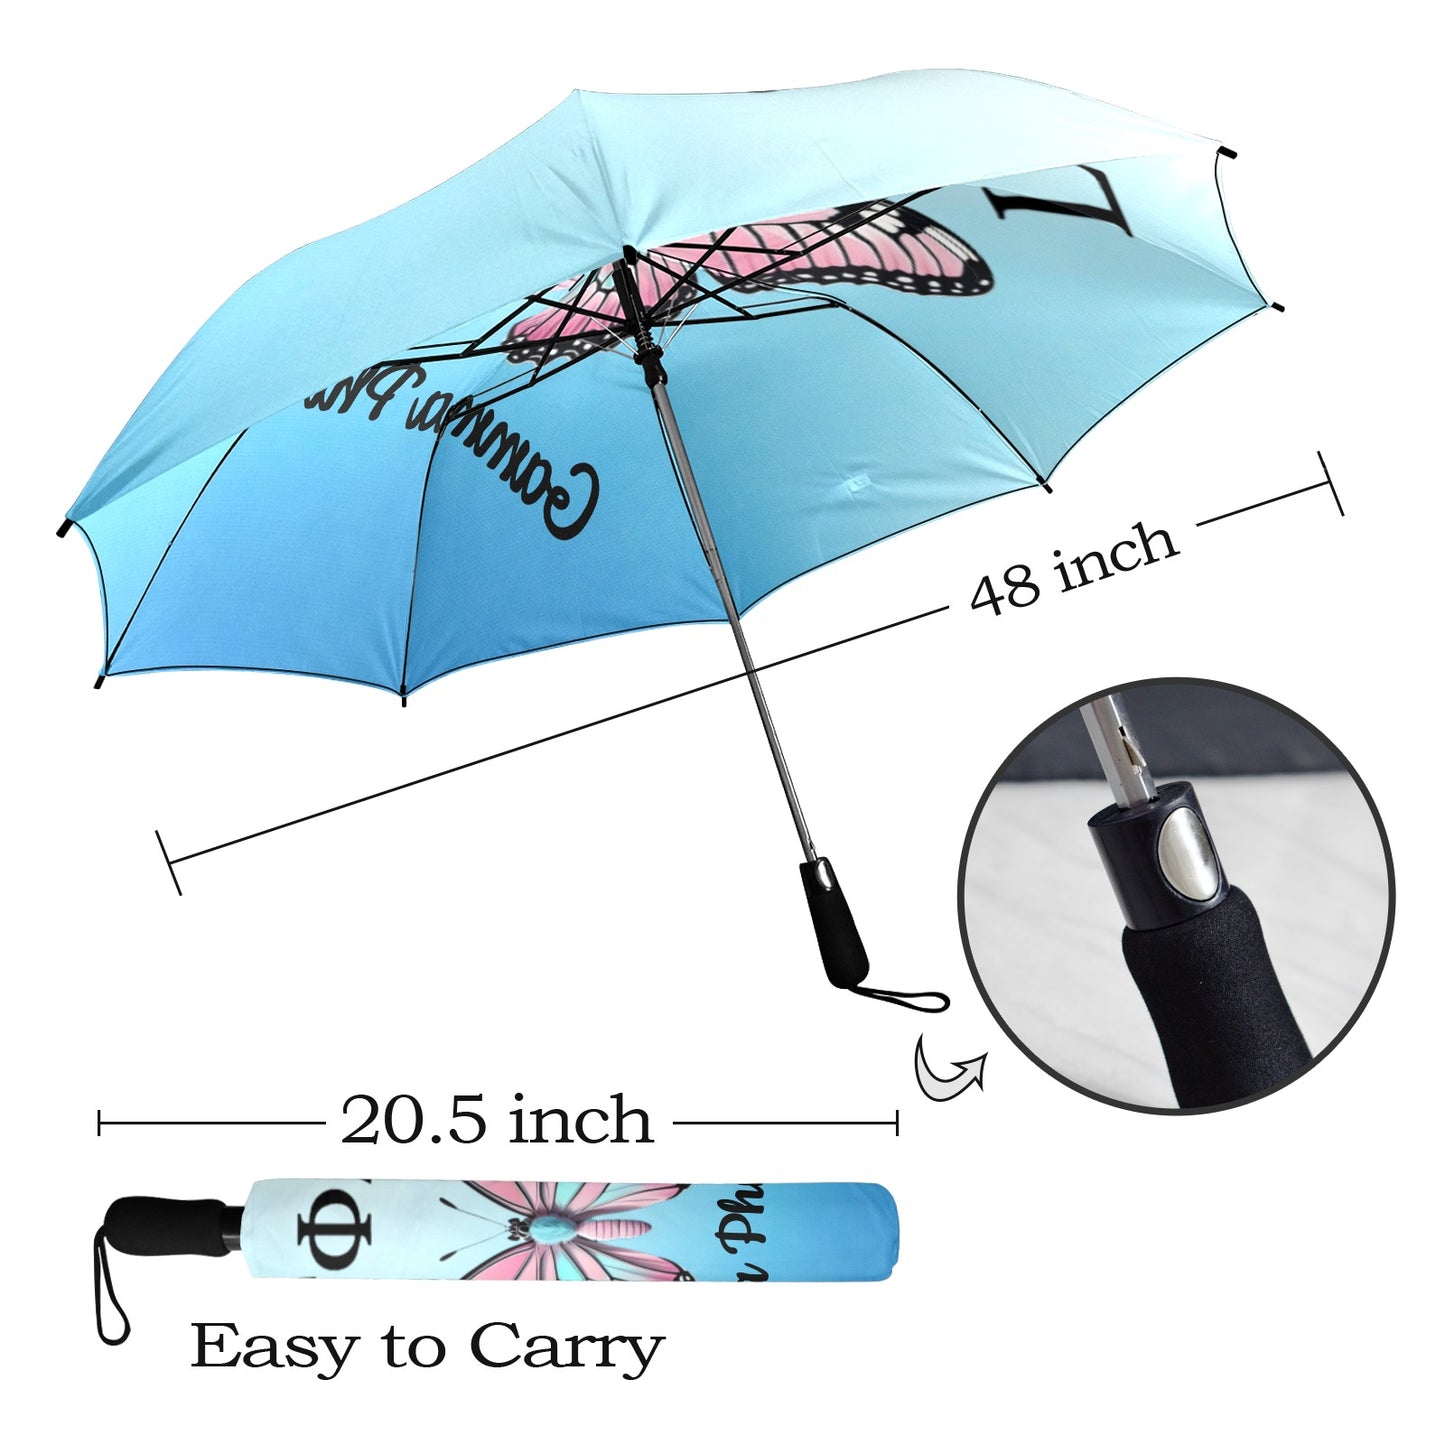 Gamma Phi Delta Butterly Semi-Automatic Foldable Umbrella